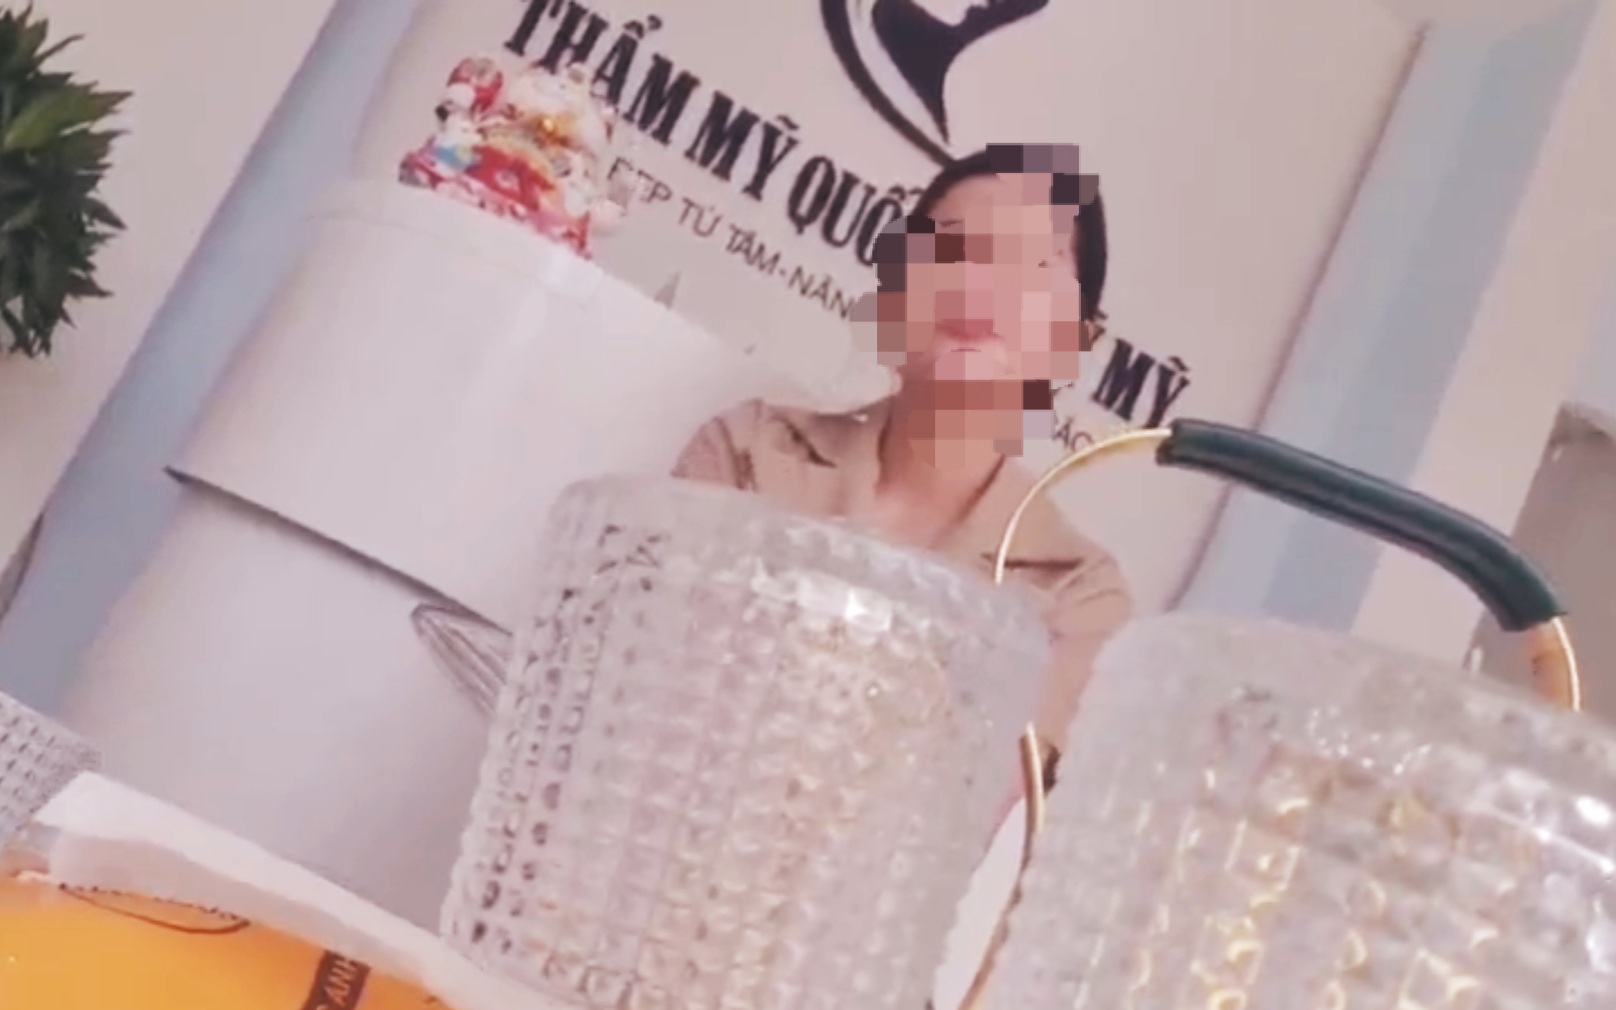 "Loạn" hoạt động thẩm mỹ trái phép tại Quảng Bình